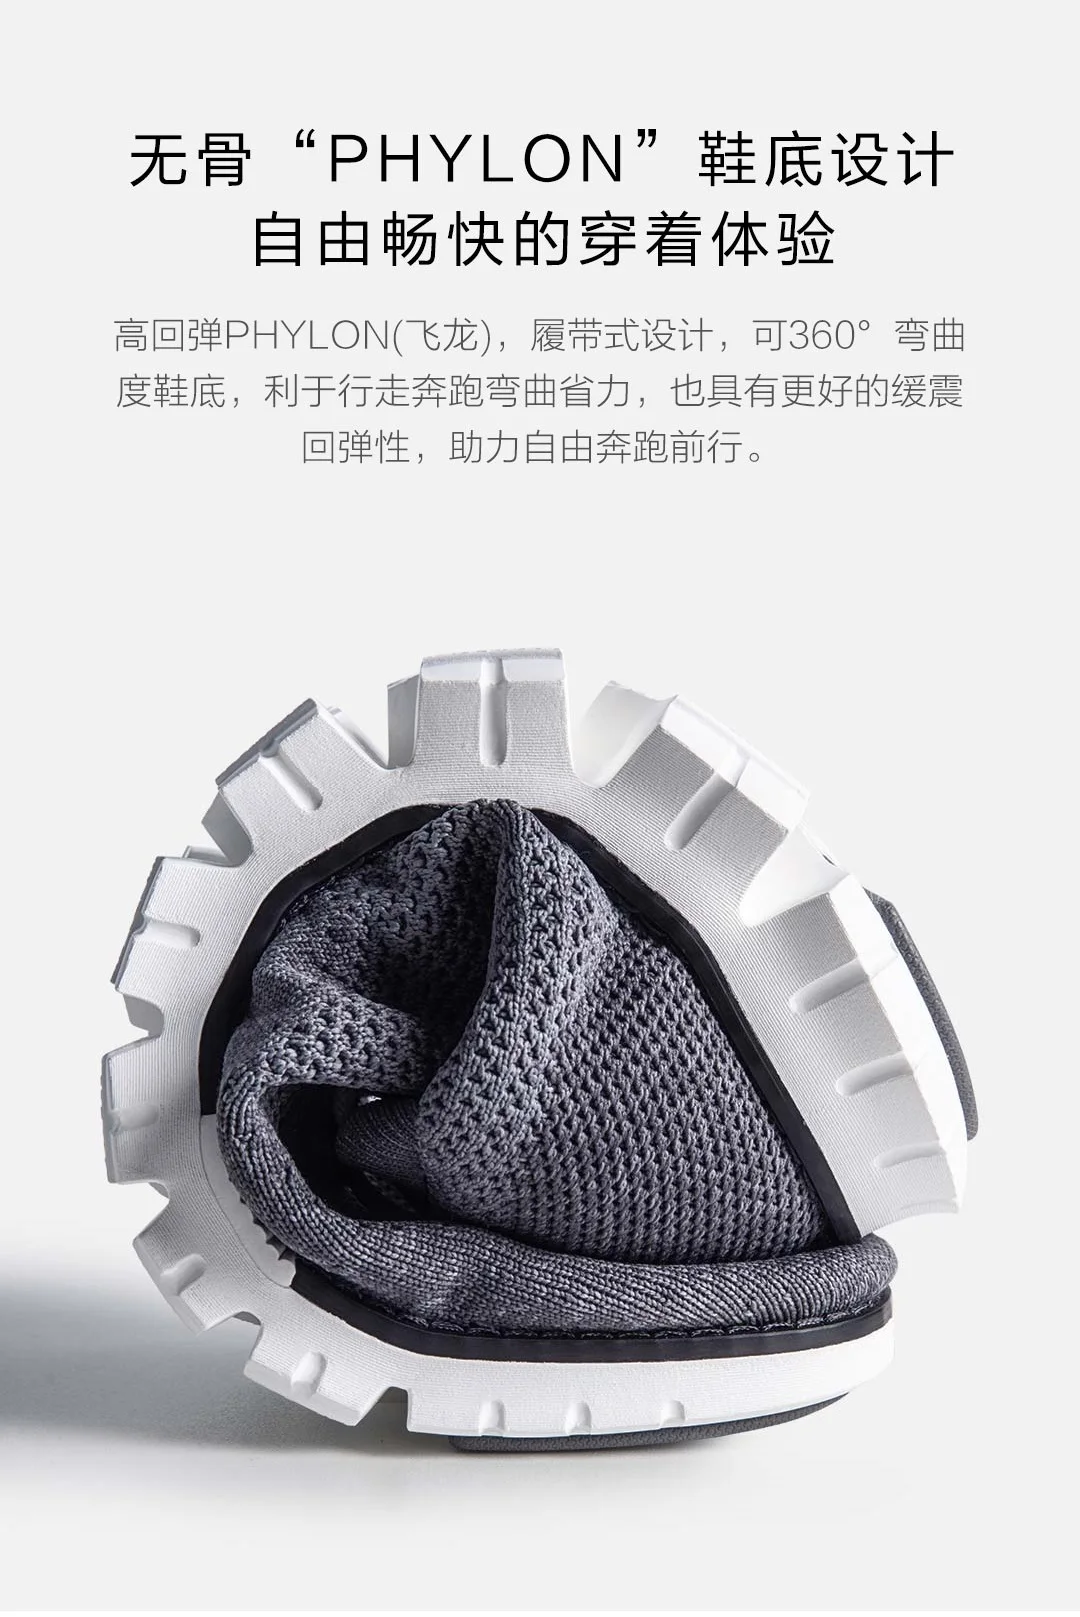 Xiaomi оригинальная спортивная обувь серии Coollinght; деловая мужская повседневная обувь с мягкой подошвой; крутая дышащая мужская обувь